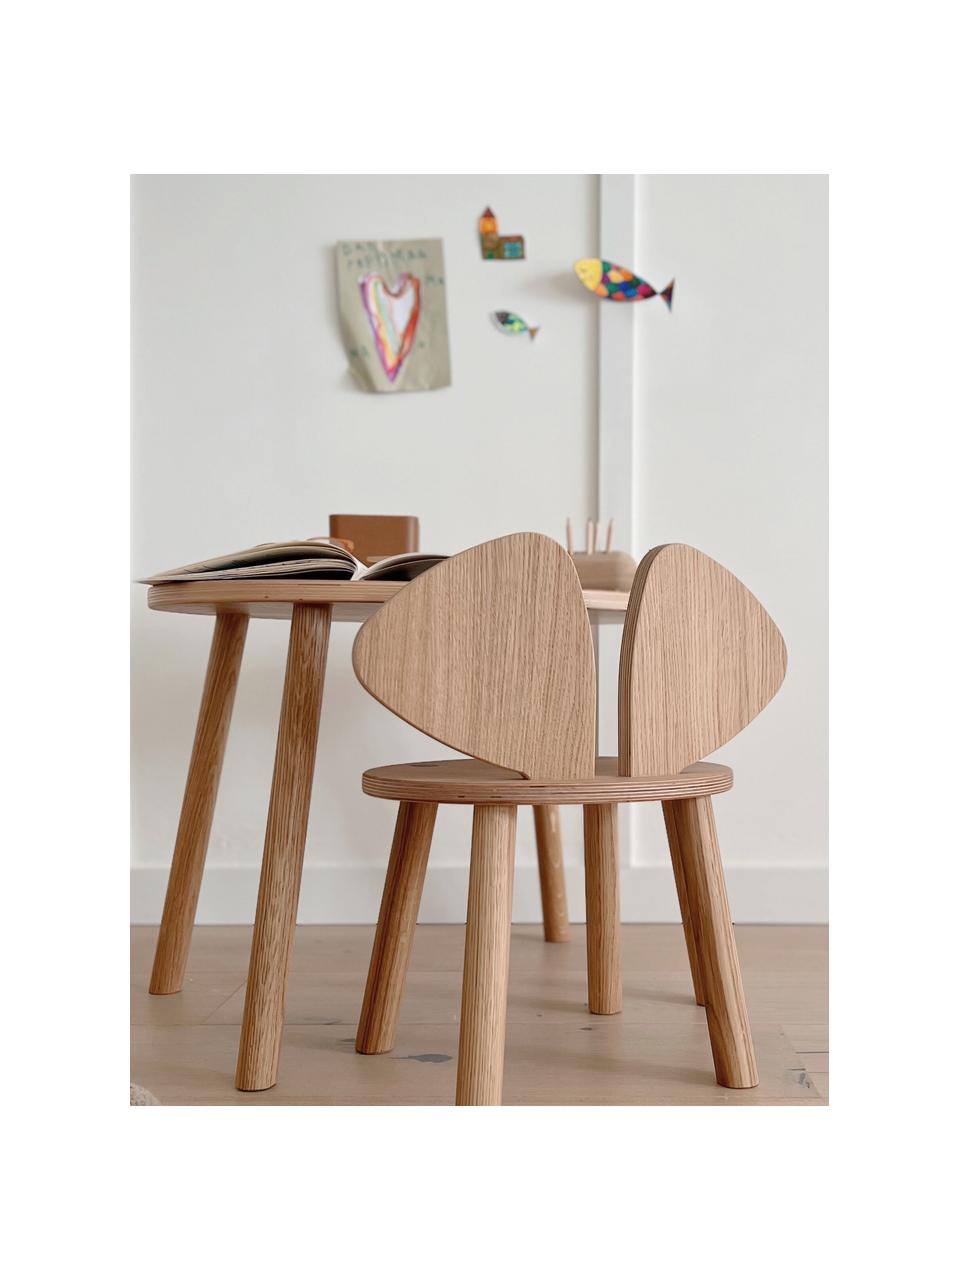 Dětská židle Mouse, Dubové dřevo

Tento produkt je vyroben z udržitelných zdrojů dřeva s certifikací FSC®., Dubové dřevo, Š 43 cm, H 28 cm